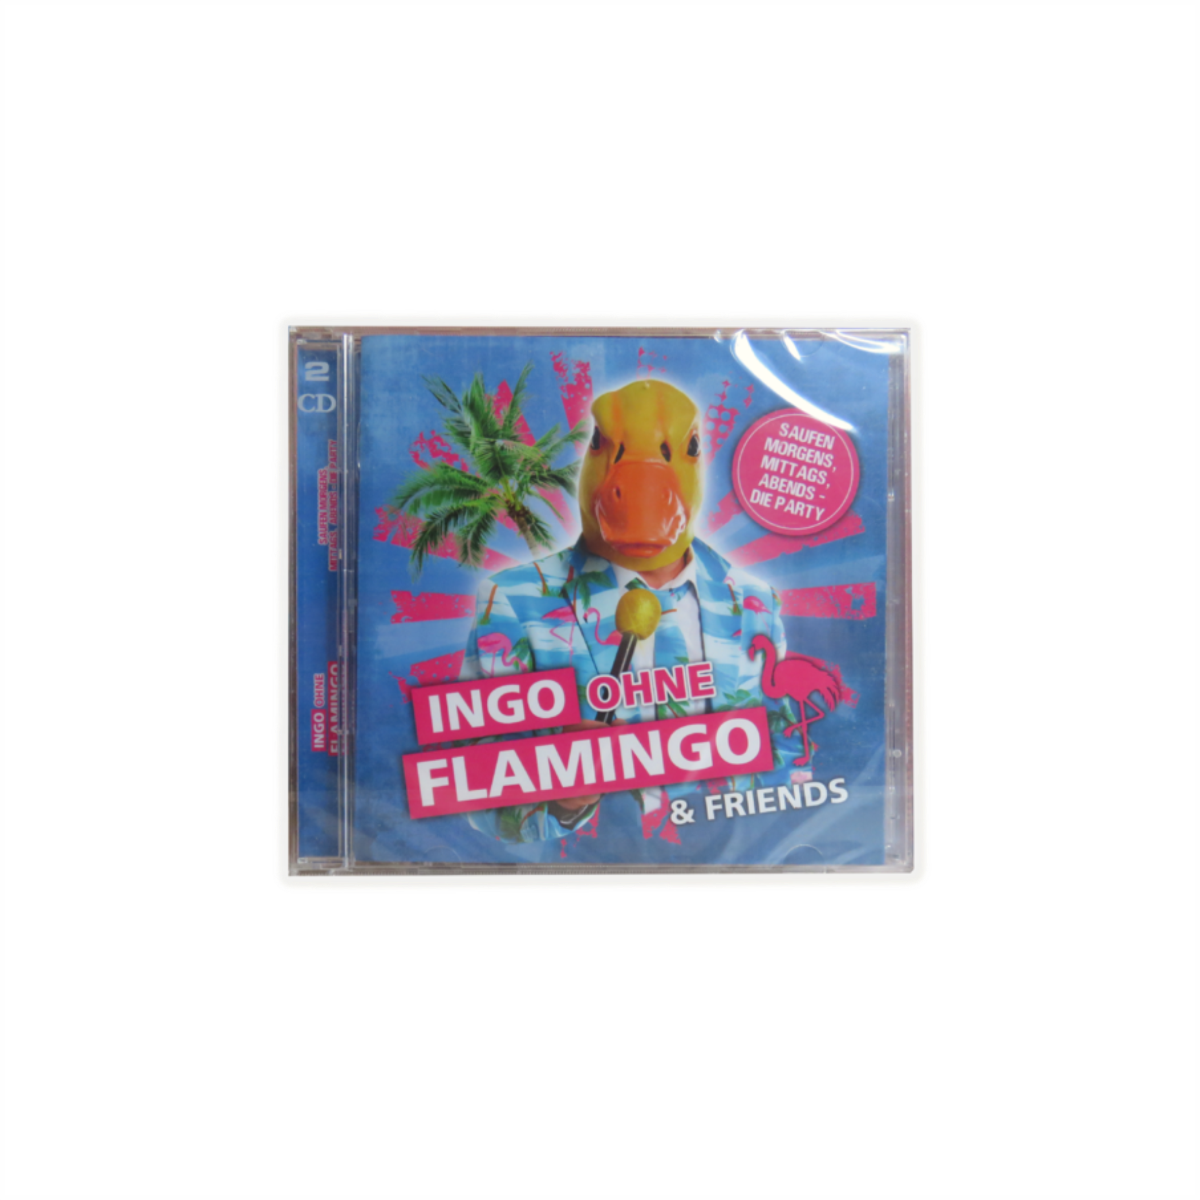 CD "INGO OHNE FLAMINGO & FRIENDS" 